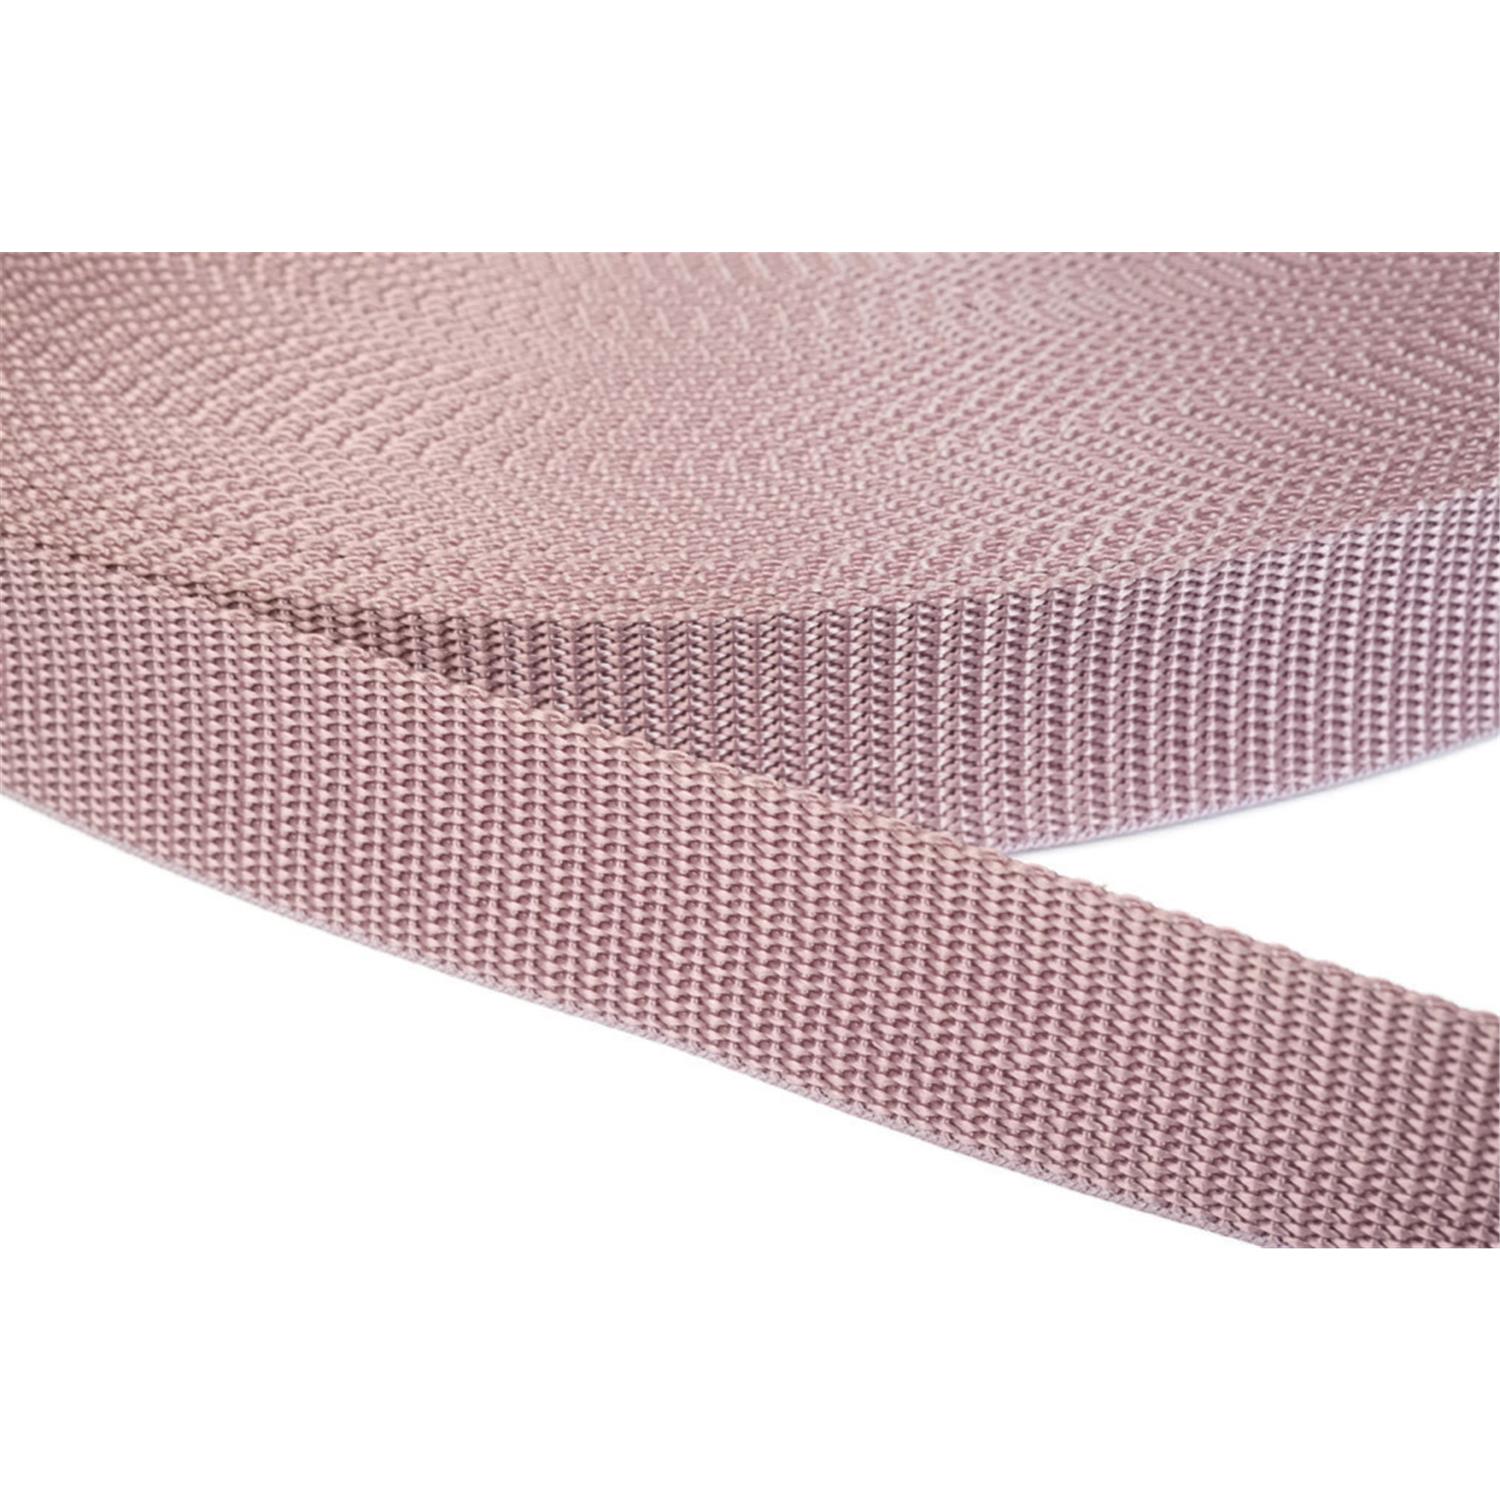 Gurtband 15mm breit aus Polypropylen in 41 Farben 15 - altrosa 50 Meter